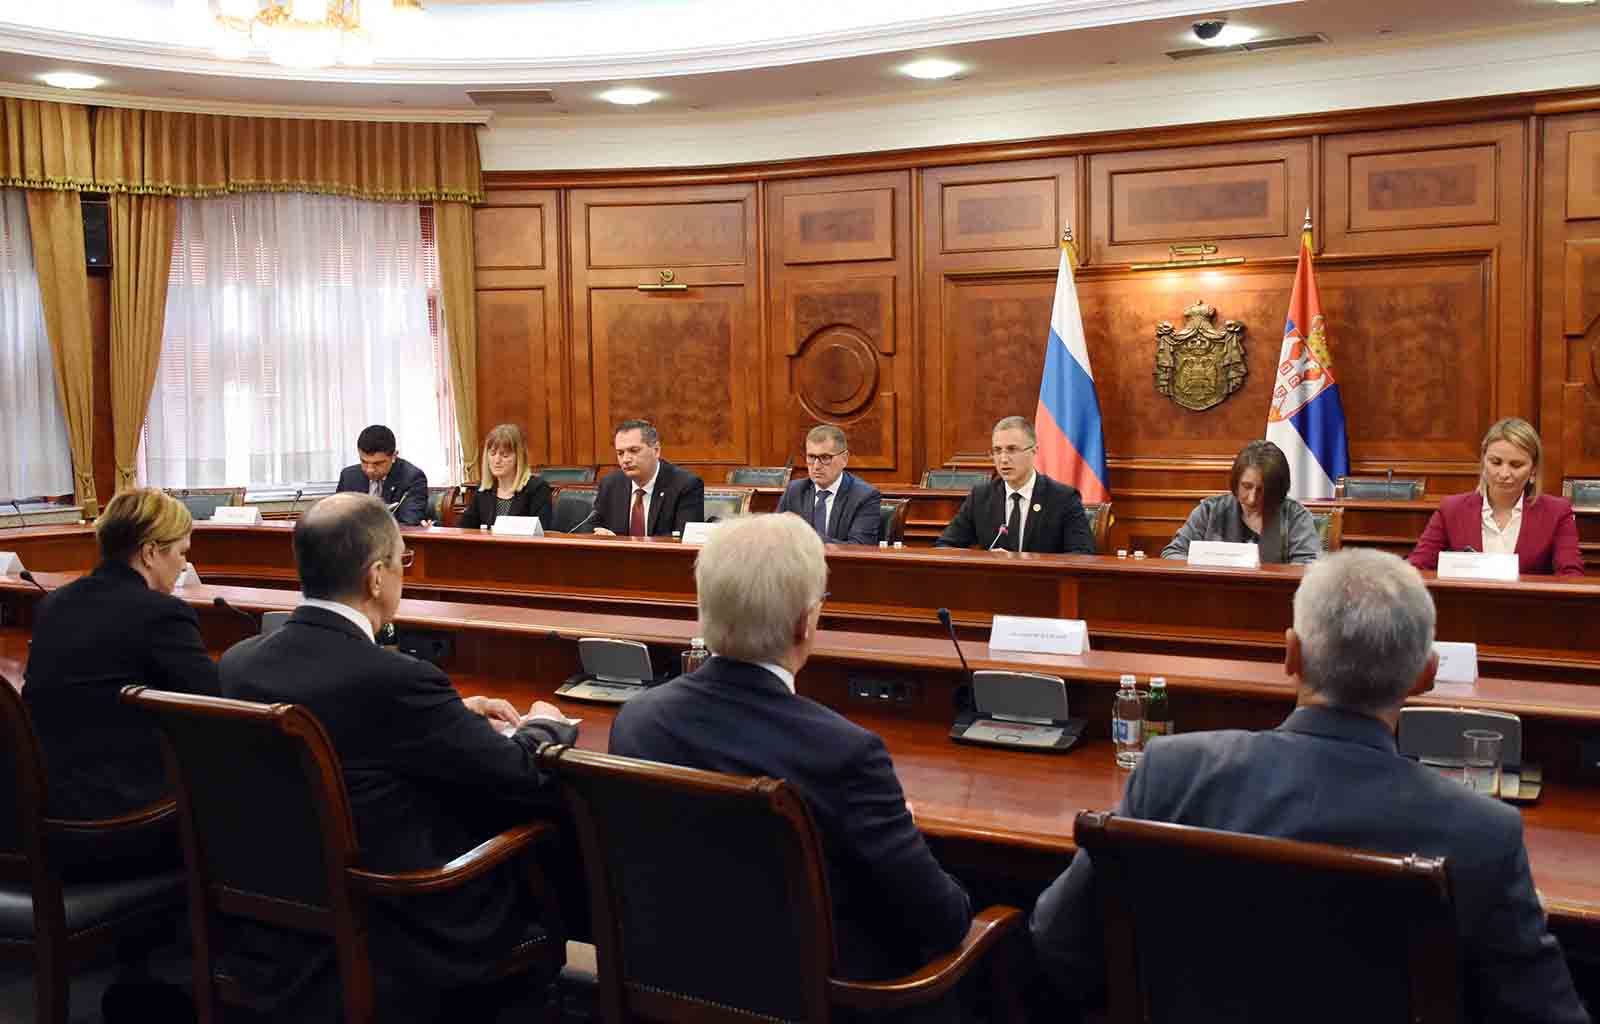 Стефановић и Лавров потписали Споразум о сарадњи у борби против тероризма